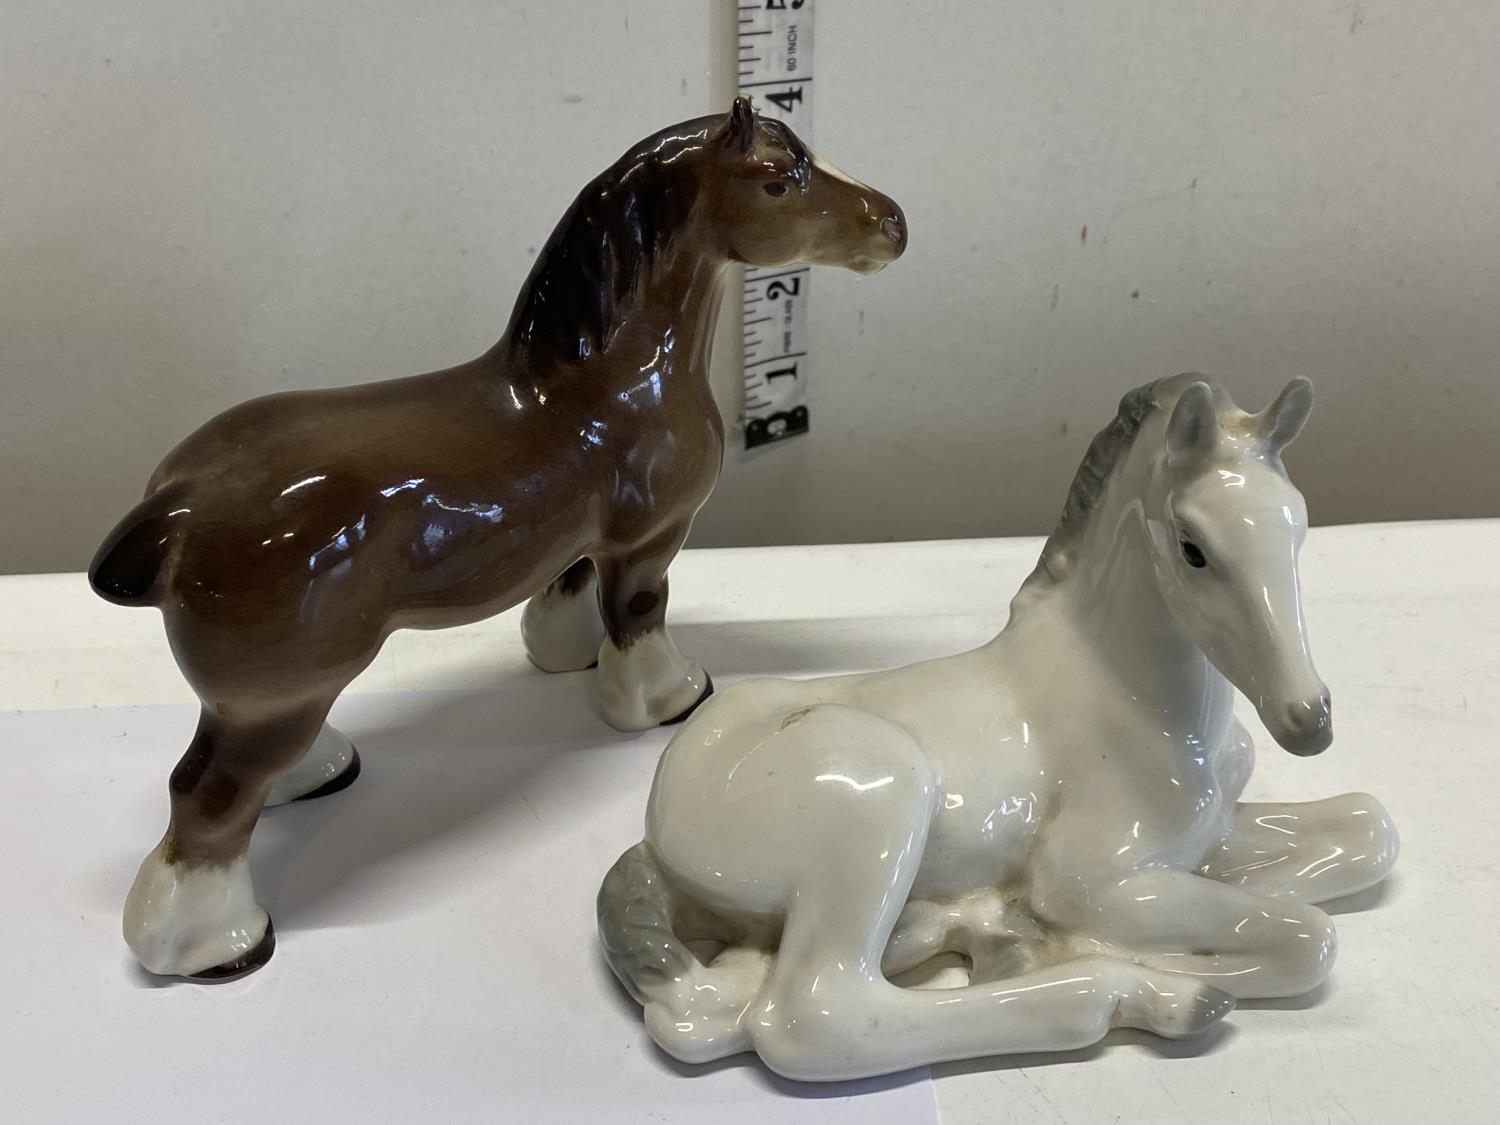 Two Russian Lomonosov horse figurines